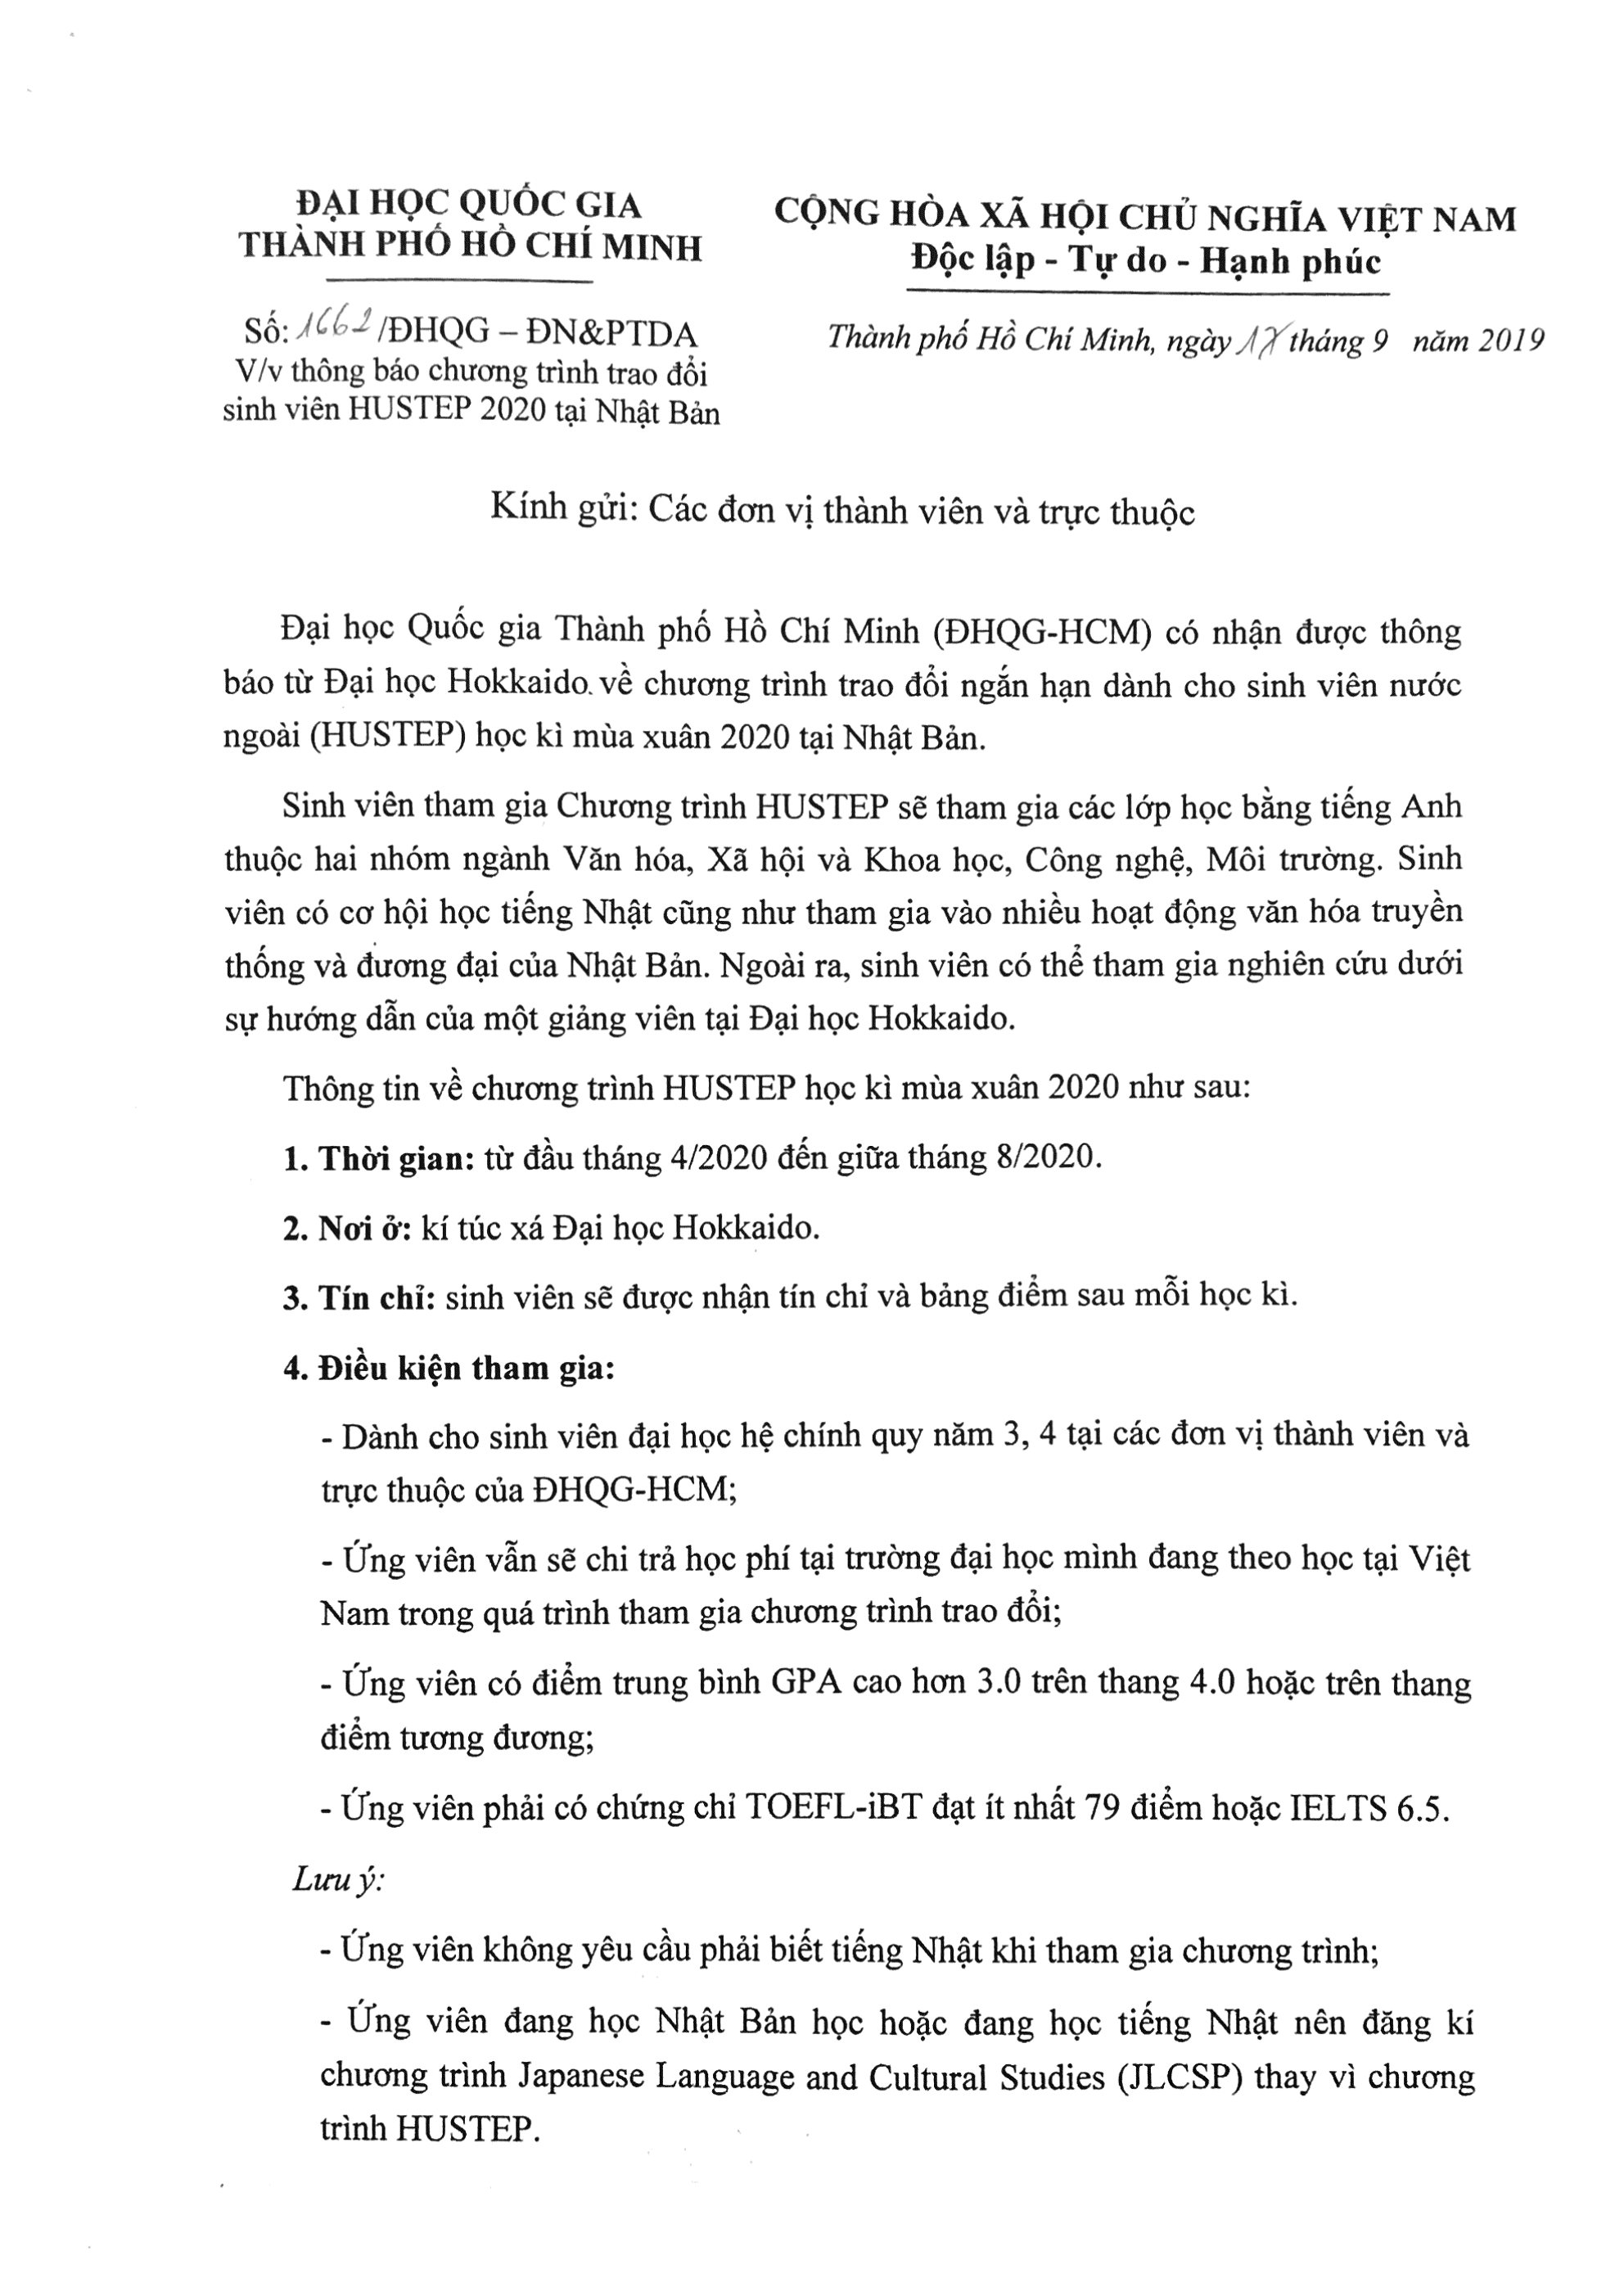 CV_chYYng_trinh_trao_YYi_SV_HUSTEP_2020_Page1